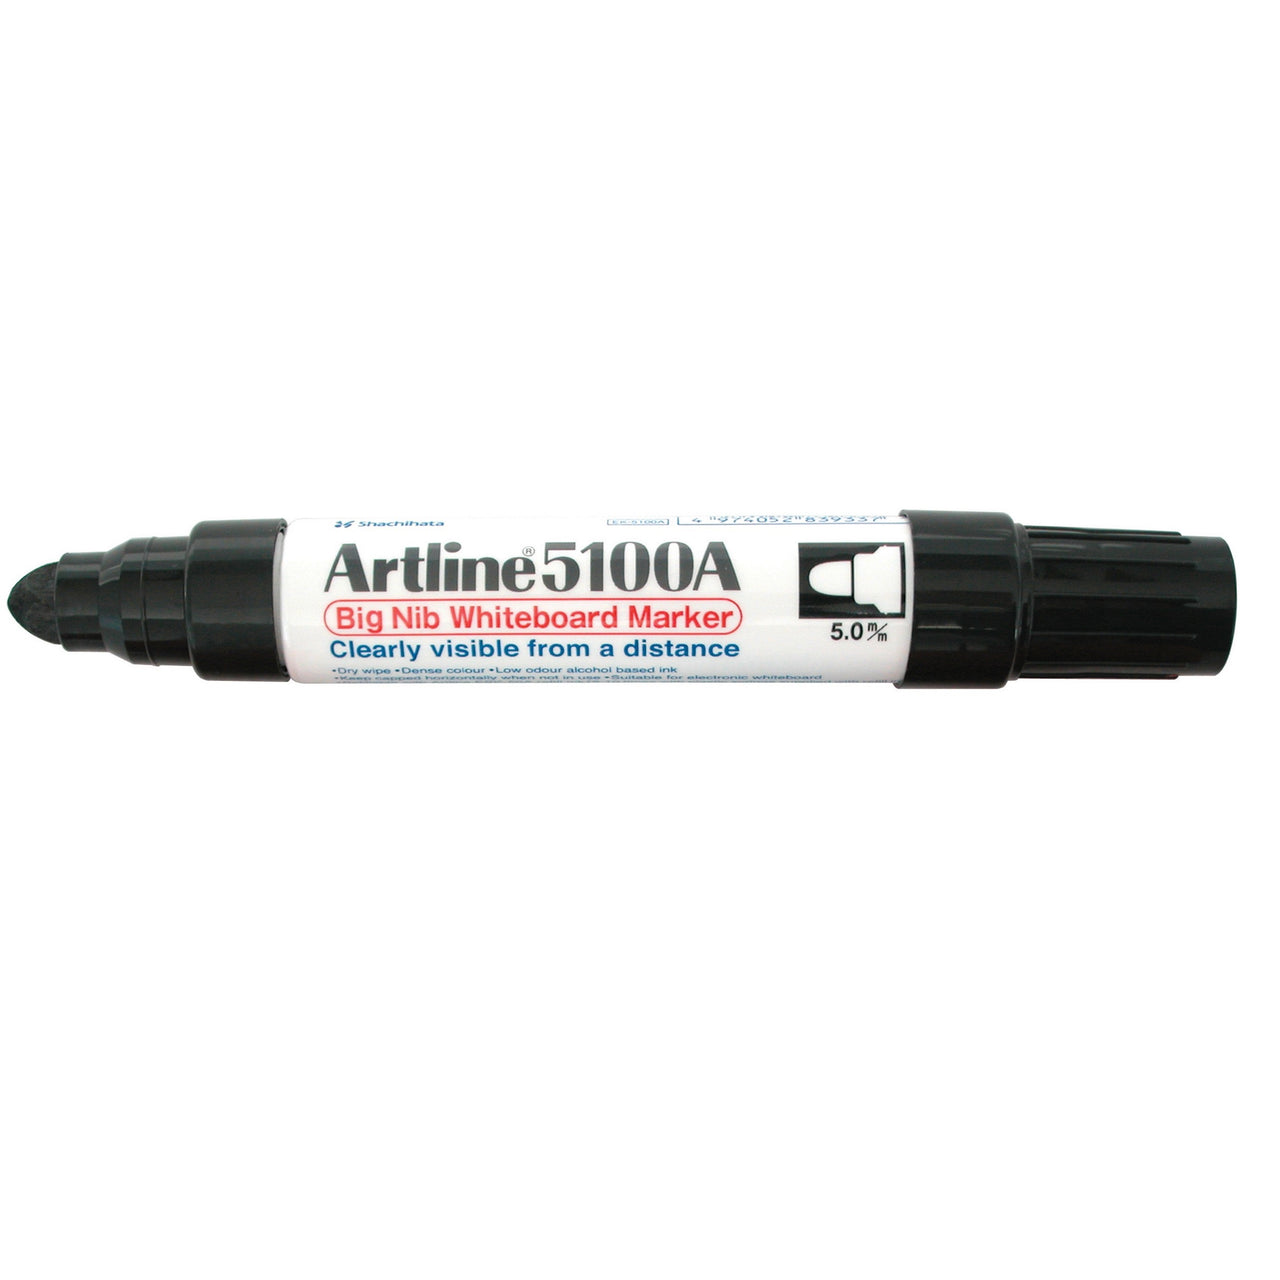 Artline 5100A Whiteboard Marker